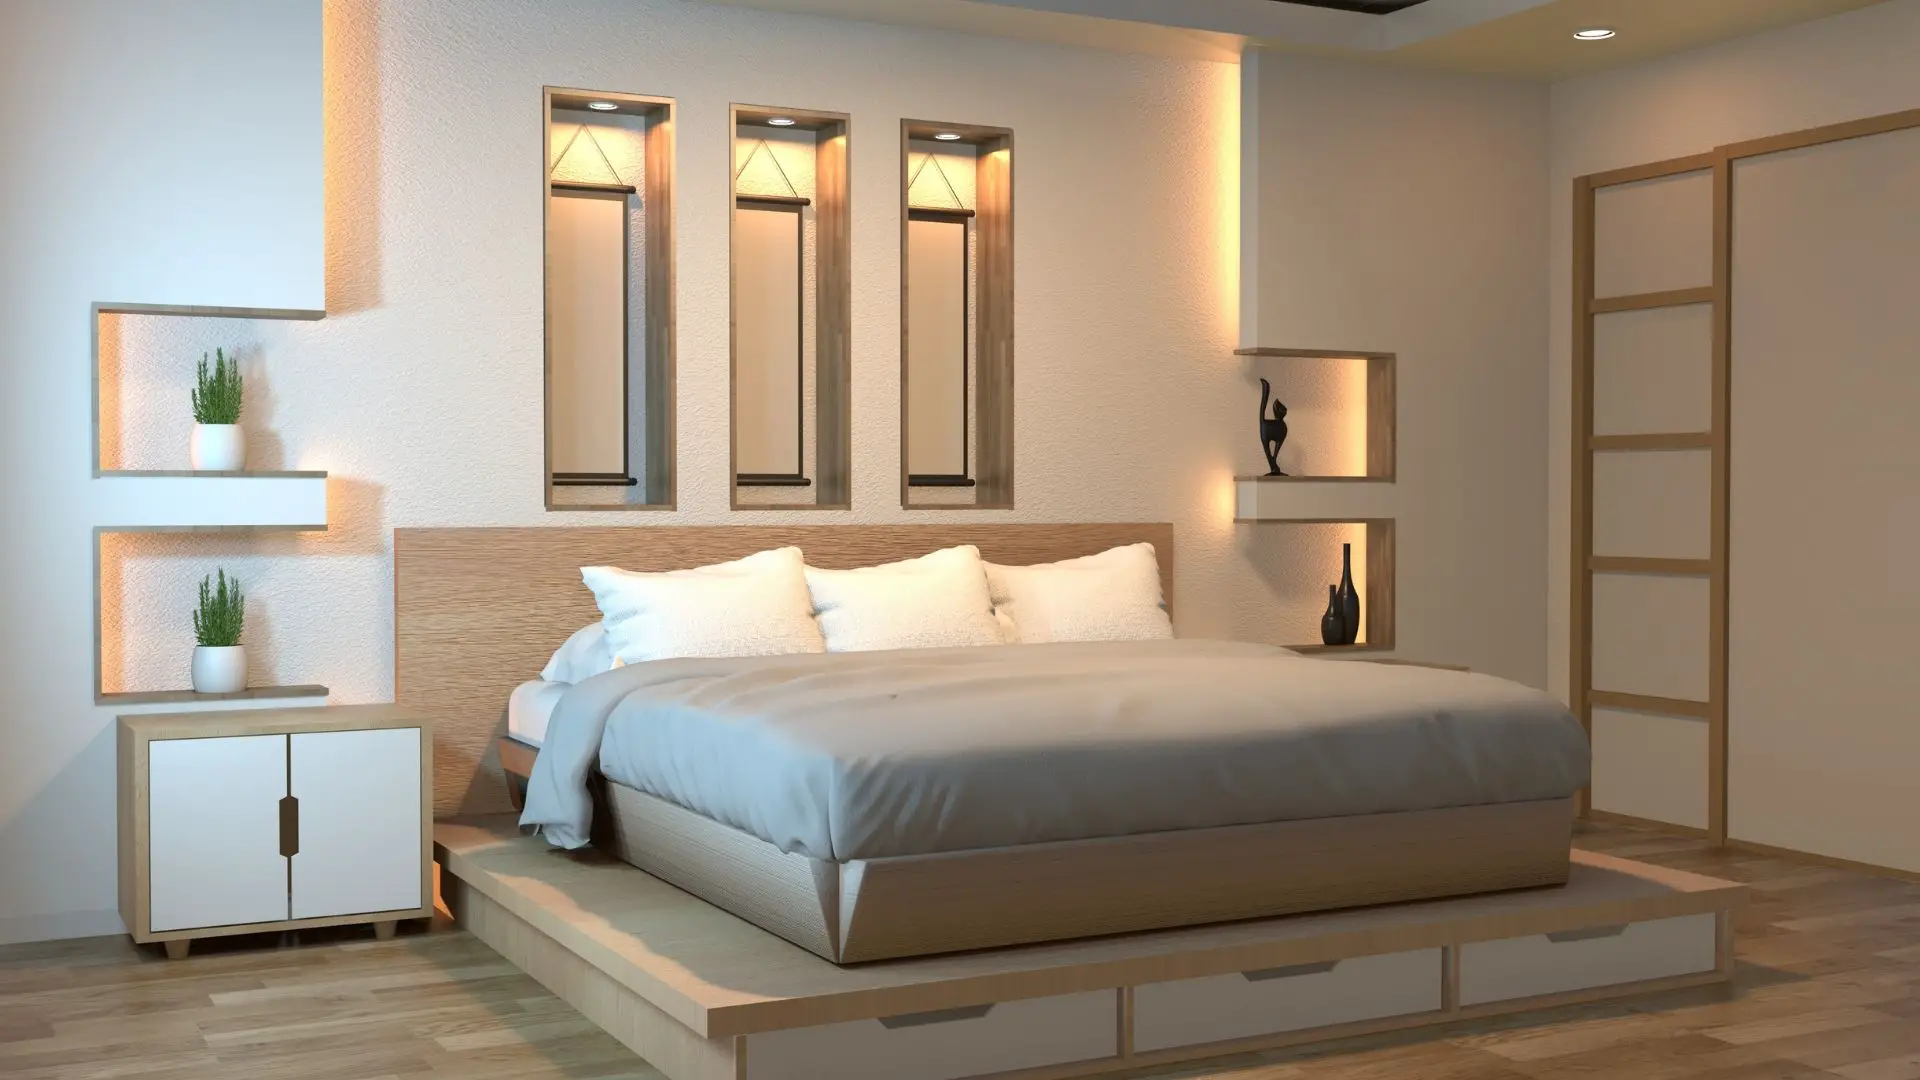 Zen Bedroom Ideas You Can Do